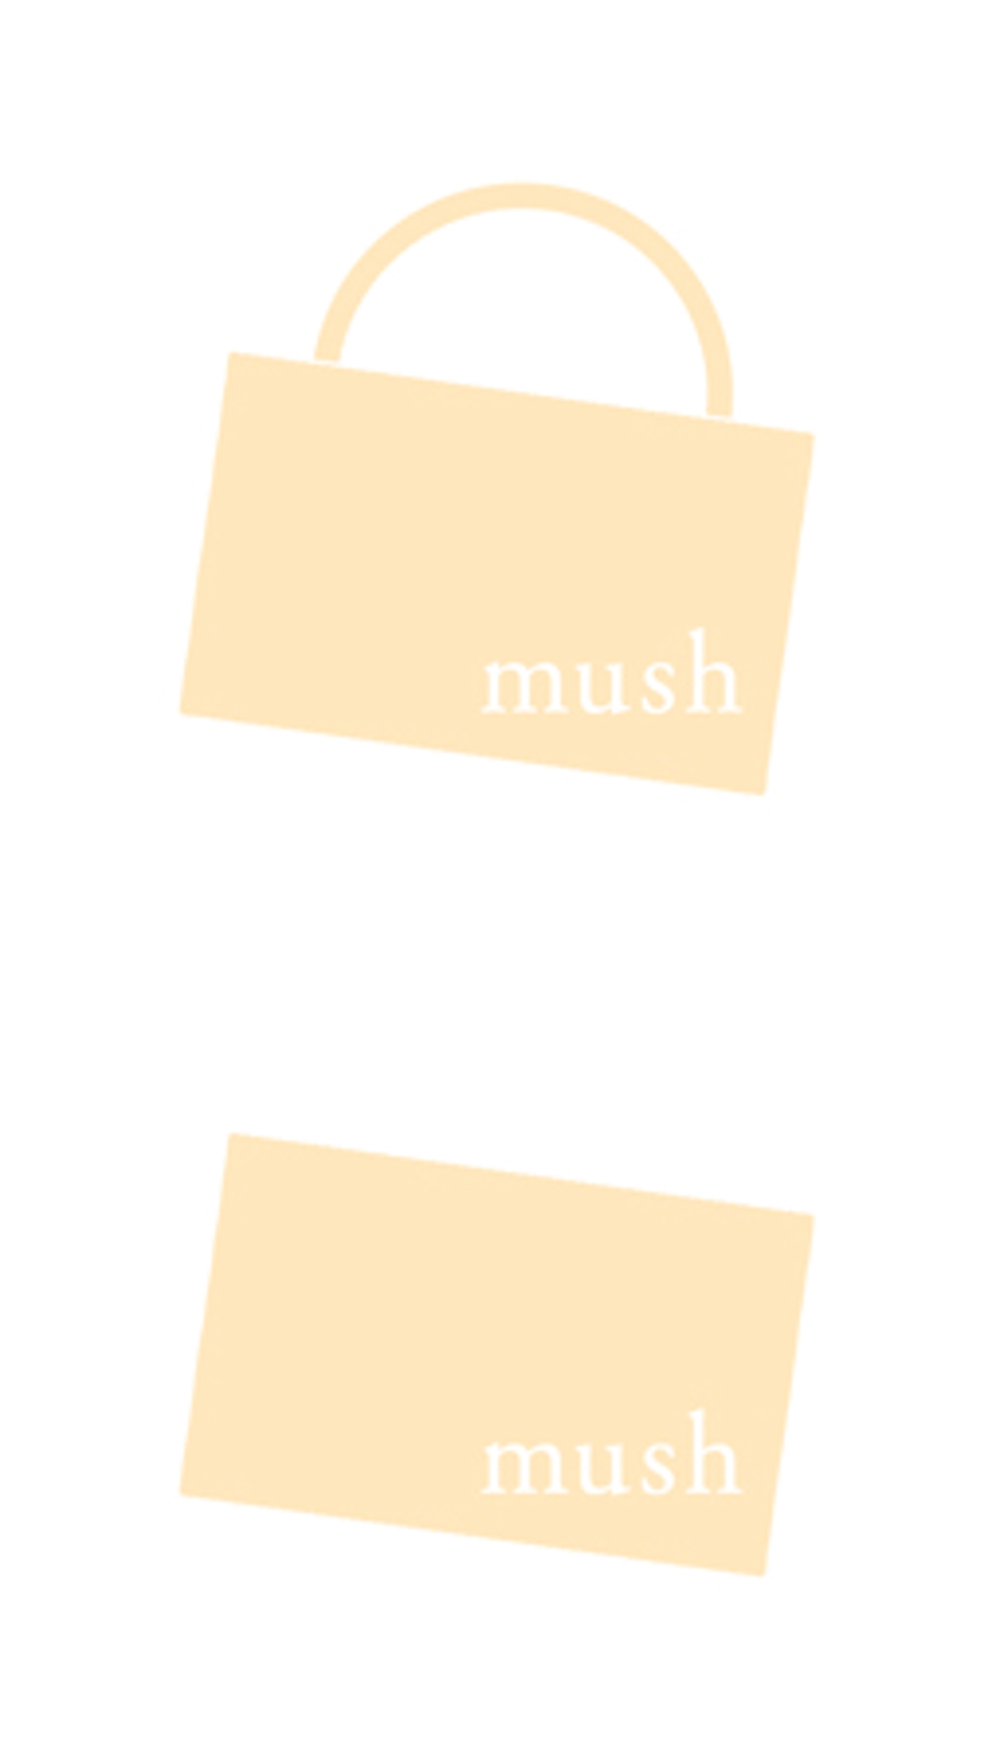 mush_logo_02_teishitu.jpg